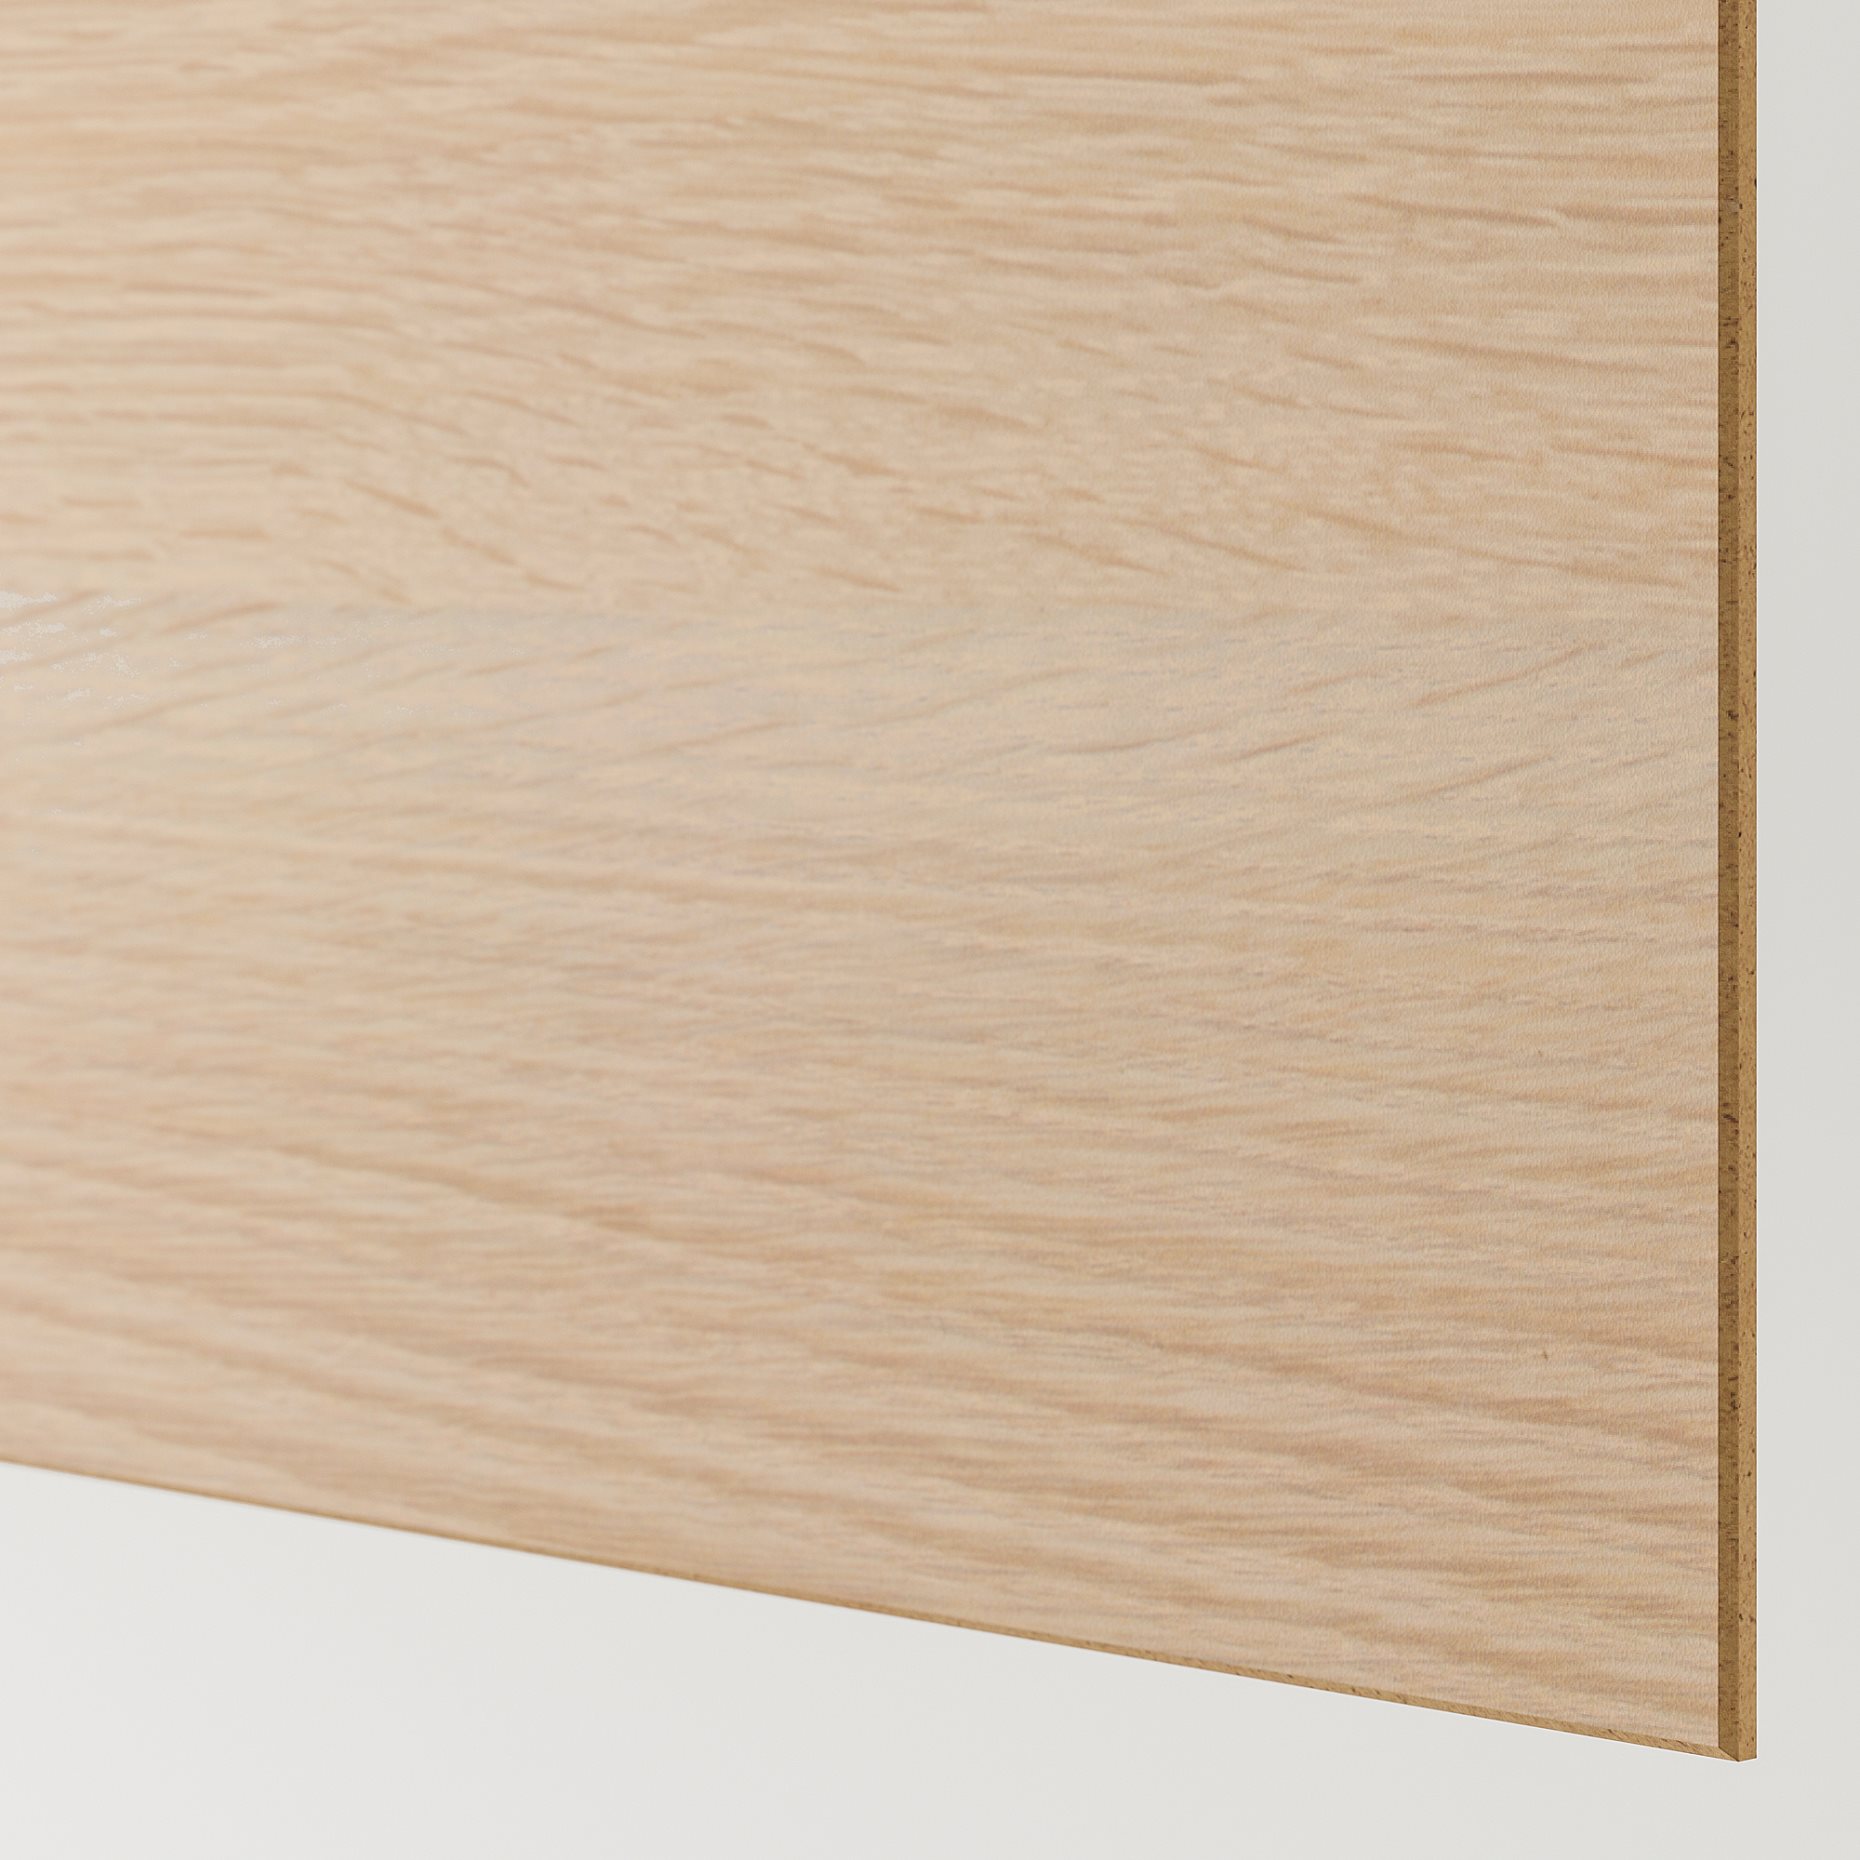 MEHAMN, 4 panels for sliding door frame, 100x201 cm, 004.211.85